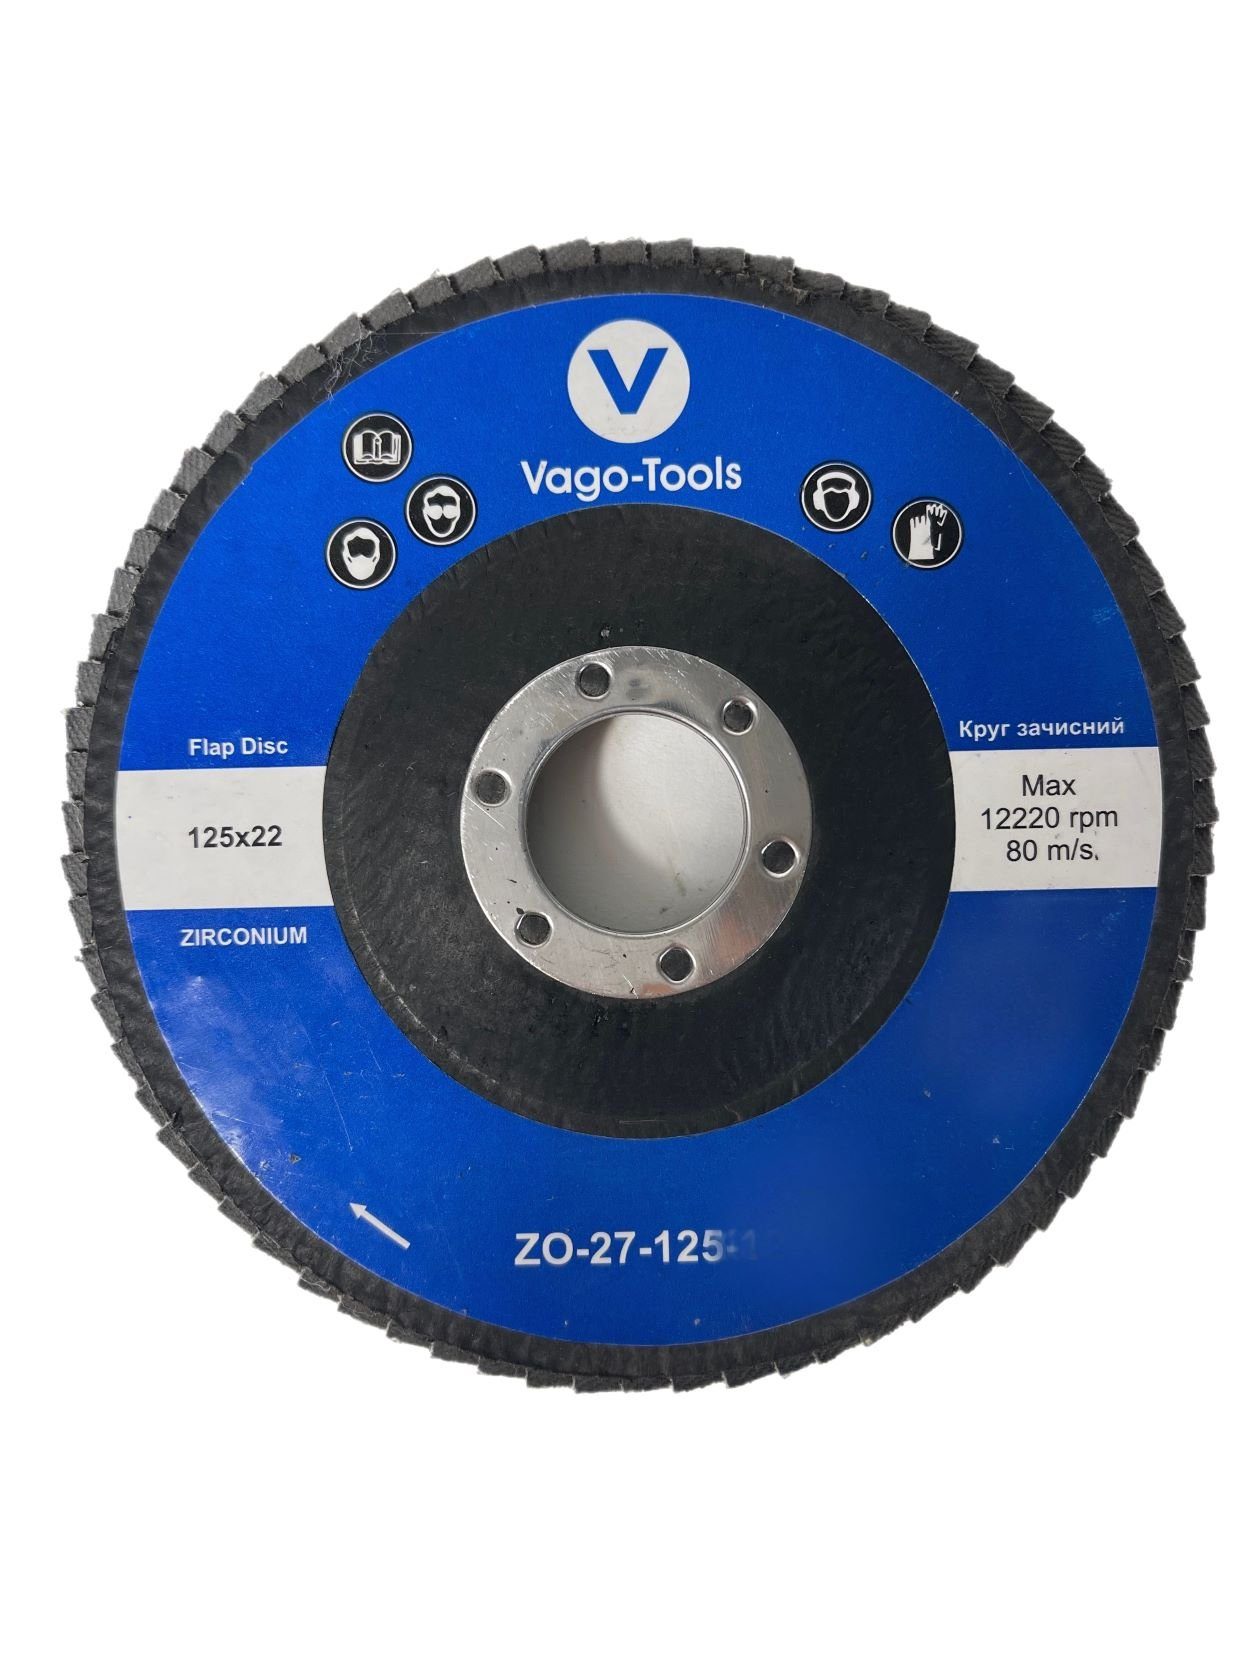 VaGo-Tools Schleifscheibe Fächerschleifscheiben 125mm P36 flach Blau 5x, (Packung)